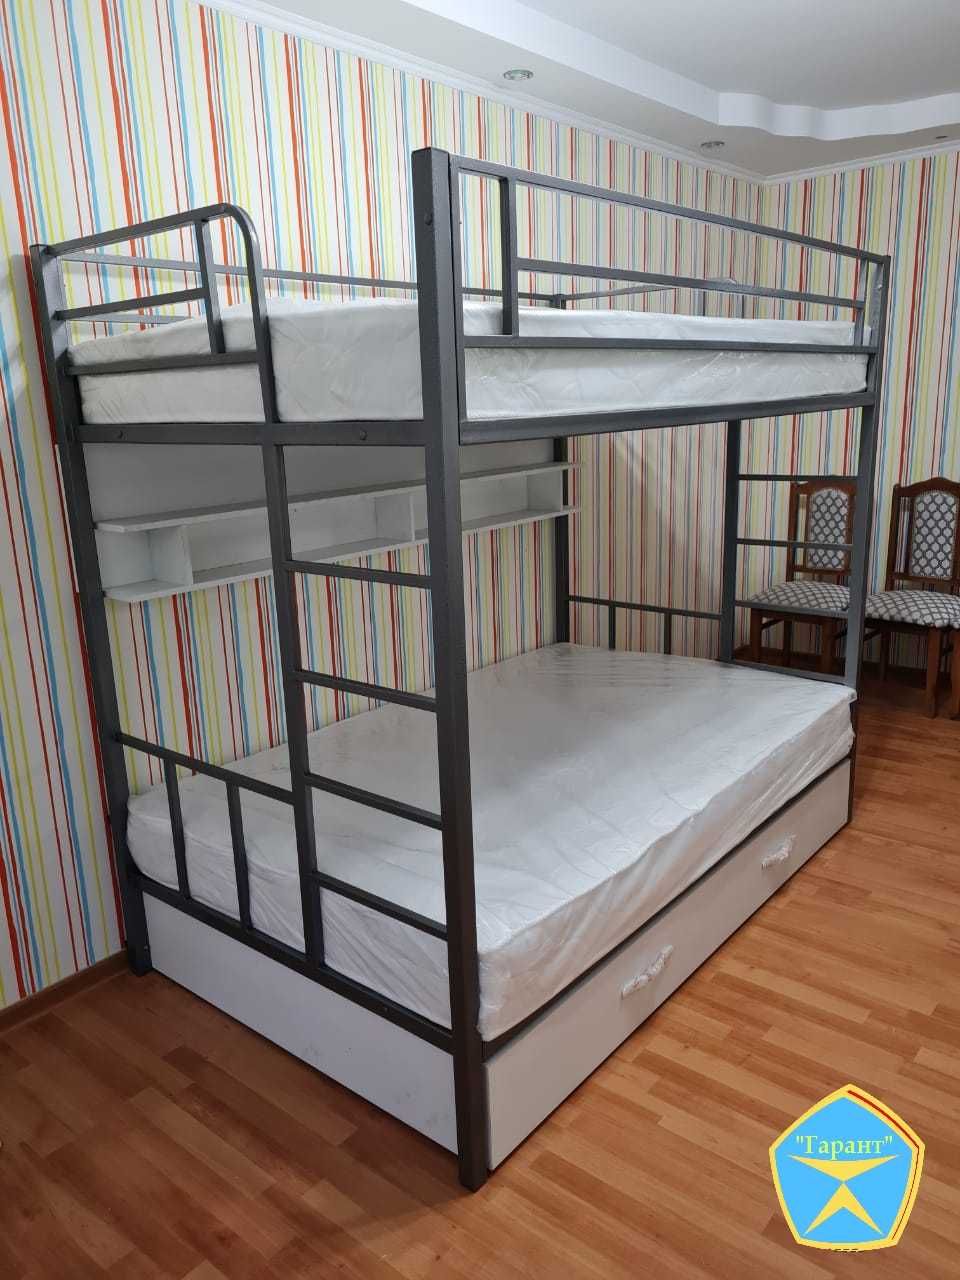 Двухъярусная металлическая кровать (двухярусная).Доставка бесплатно.